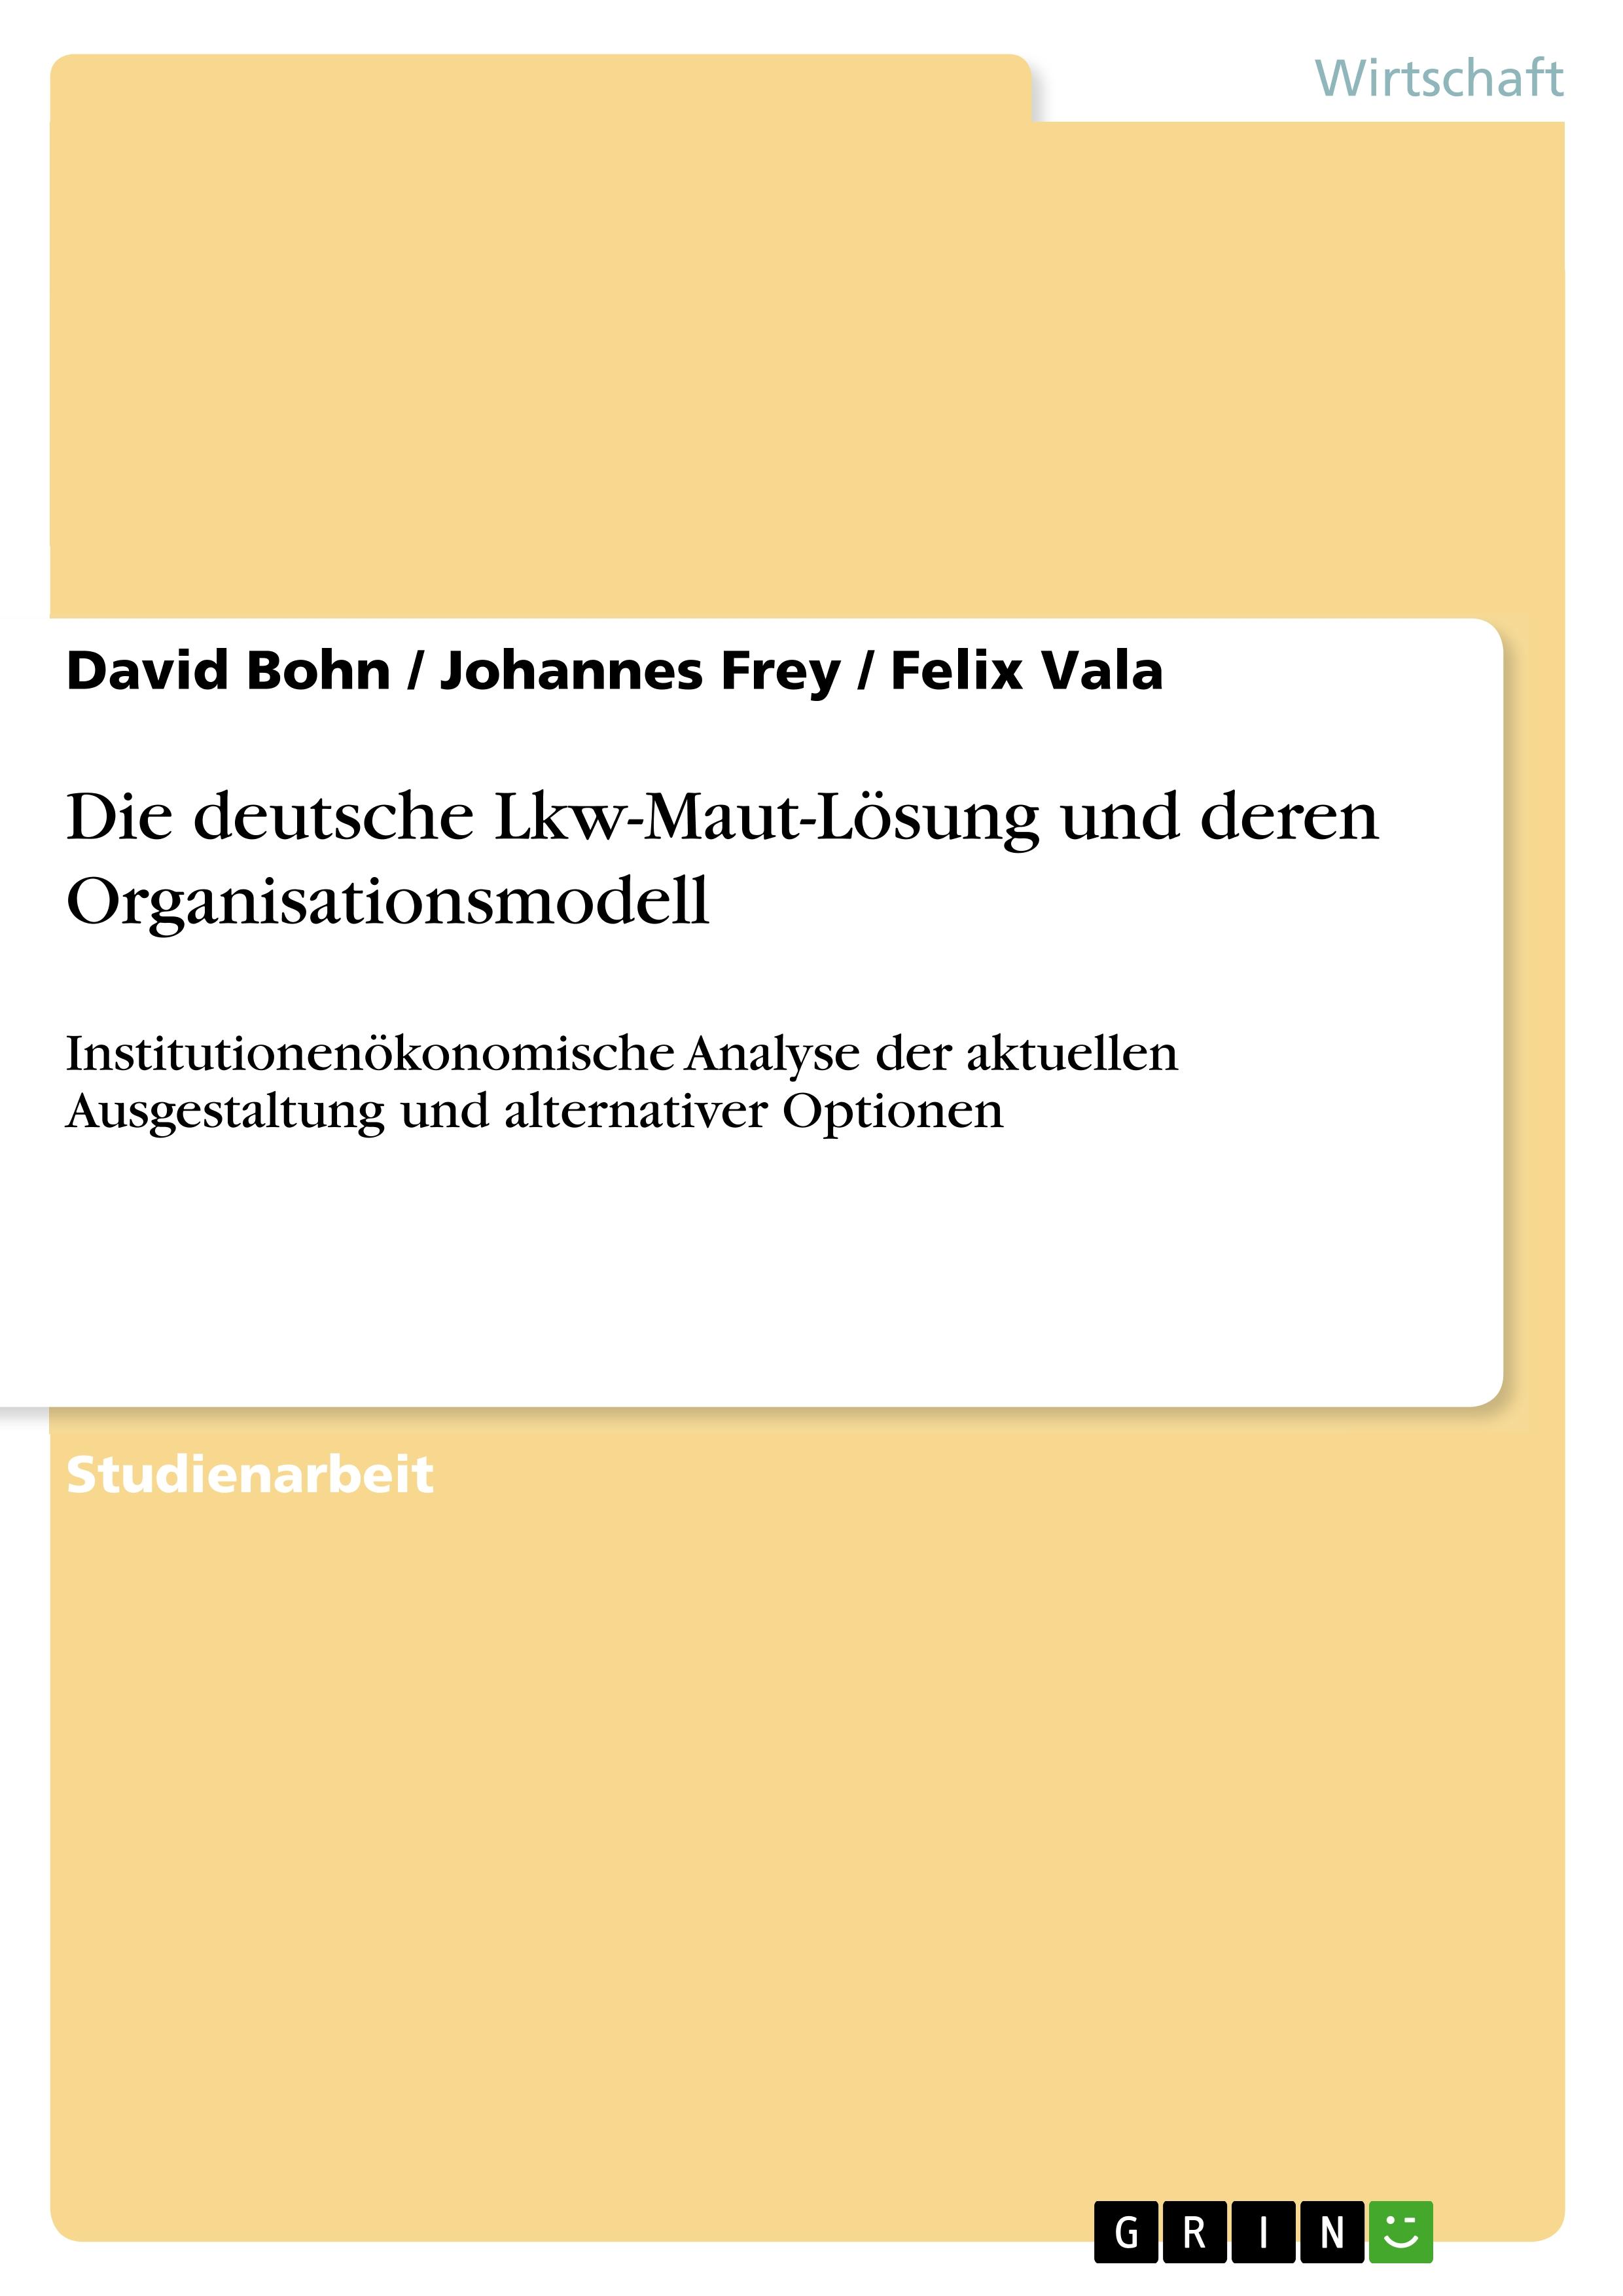 Die deutsche Lkw-Maut-Loesung und deren Organisationsmodell - Bohn, David Frey, Johannes Vala, Felix